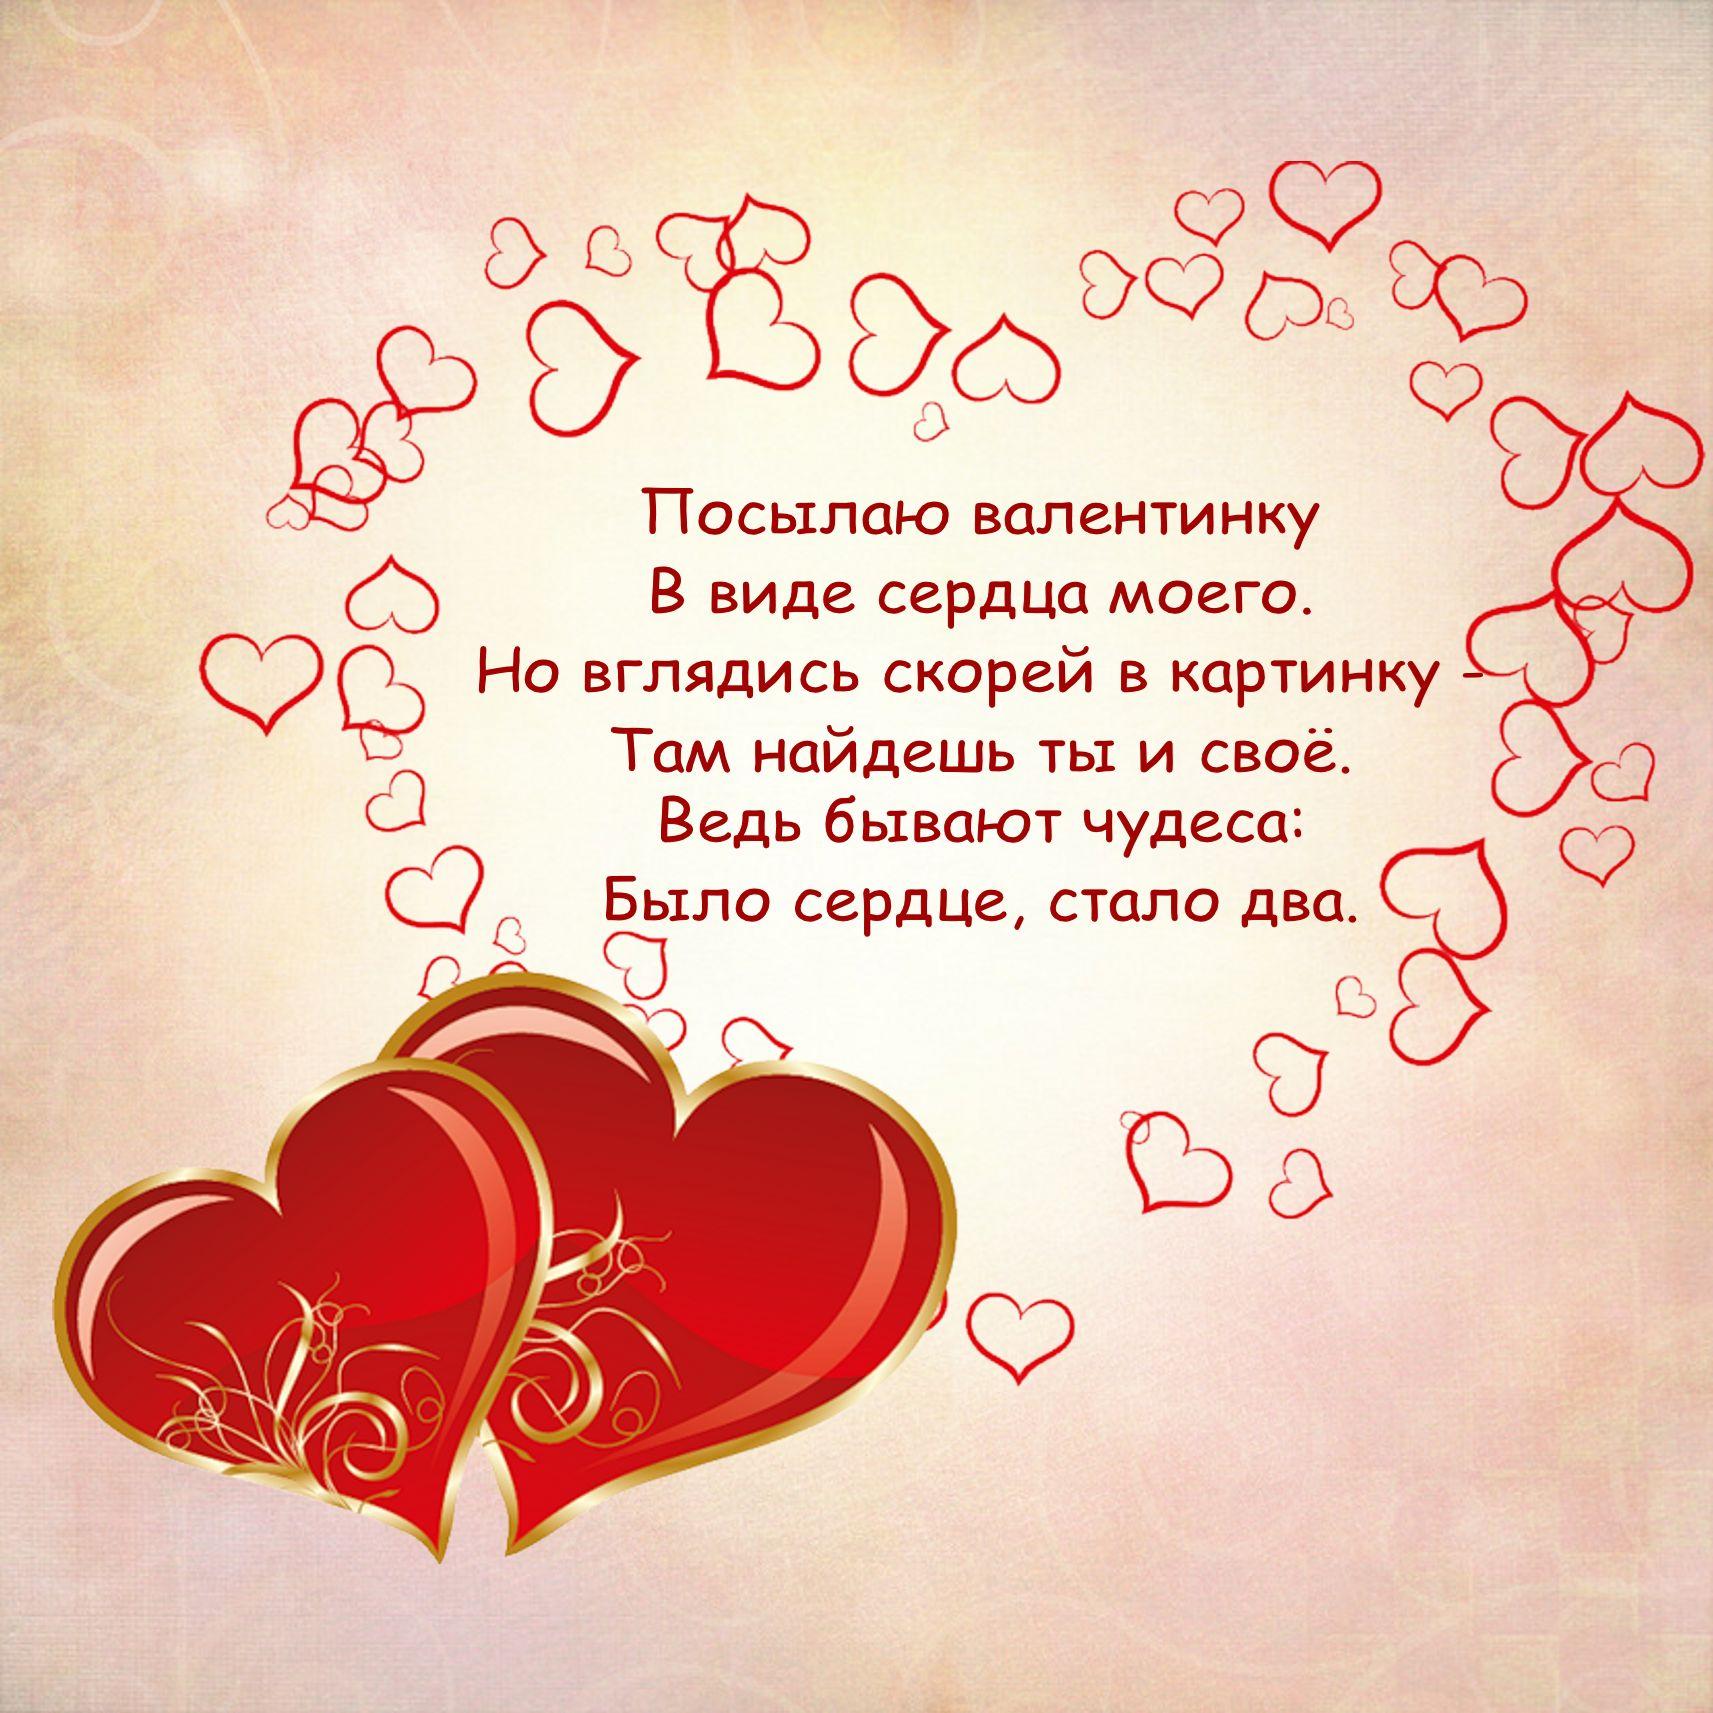 Открытка к Валентинову дню с сердечками и стихотворением на русском языке.